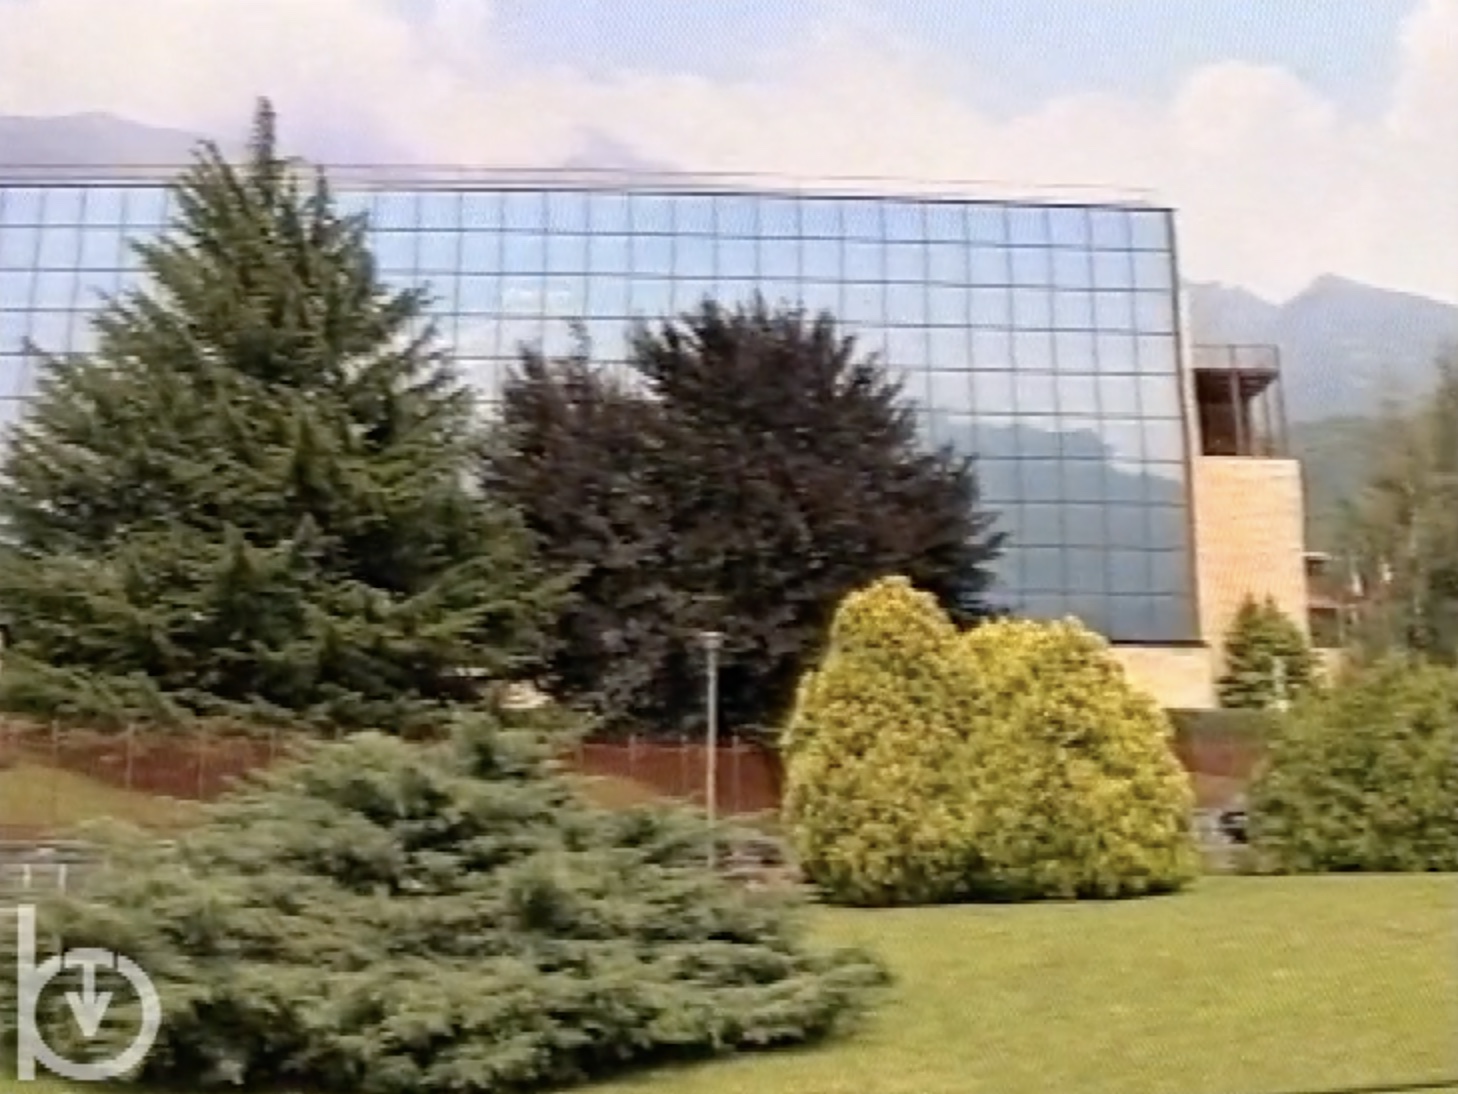 1994 - TeleAlpi - Sitav esce dalla gestione del Casino